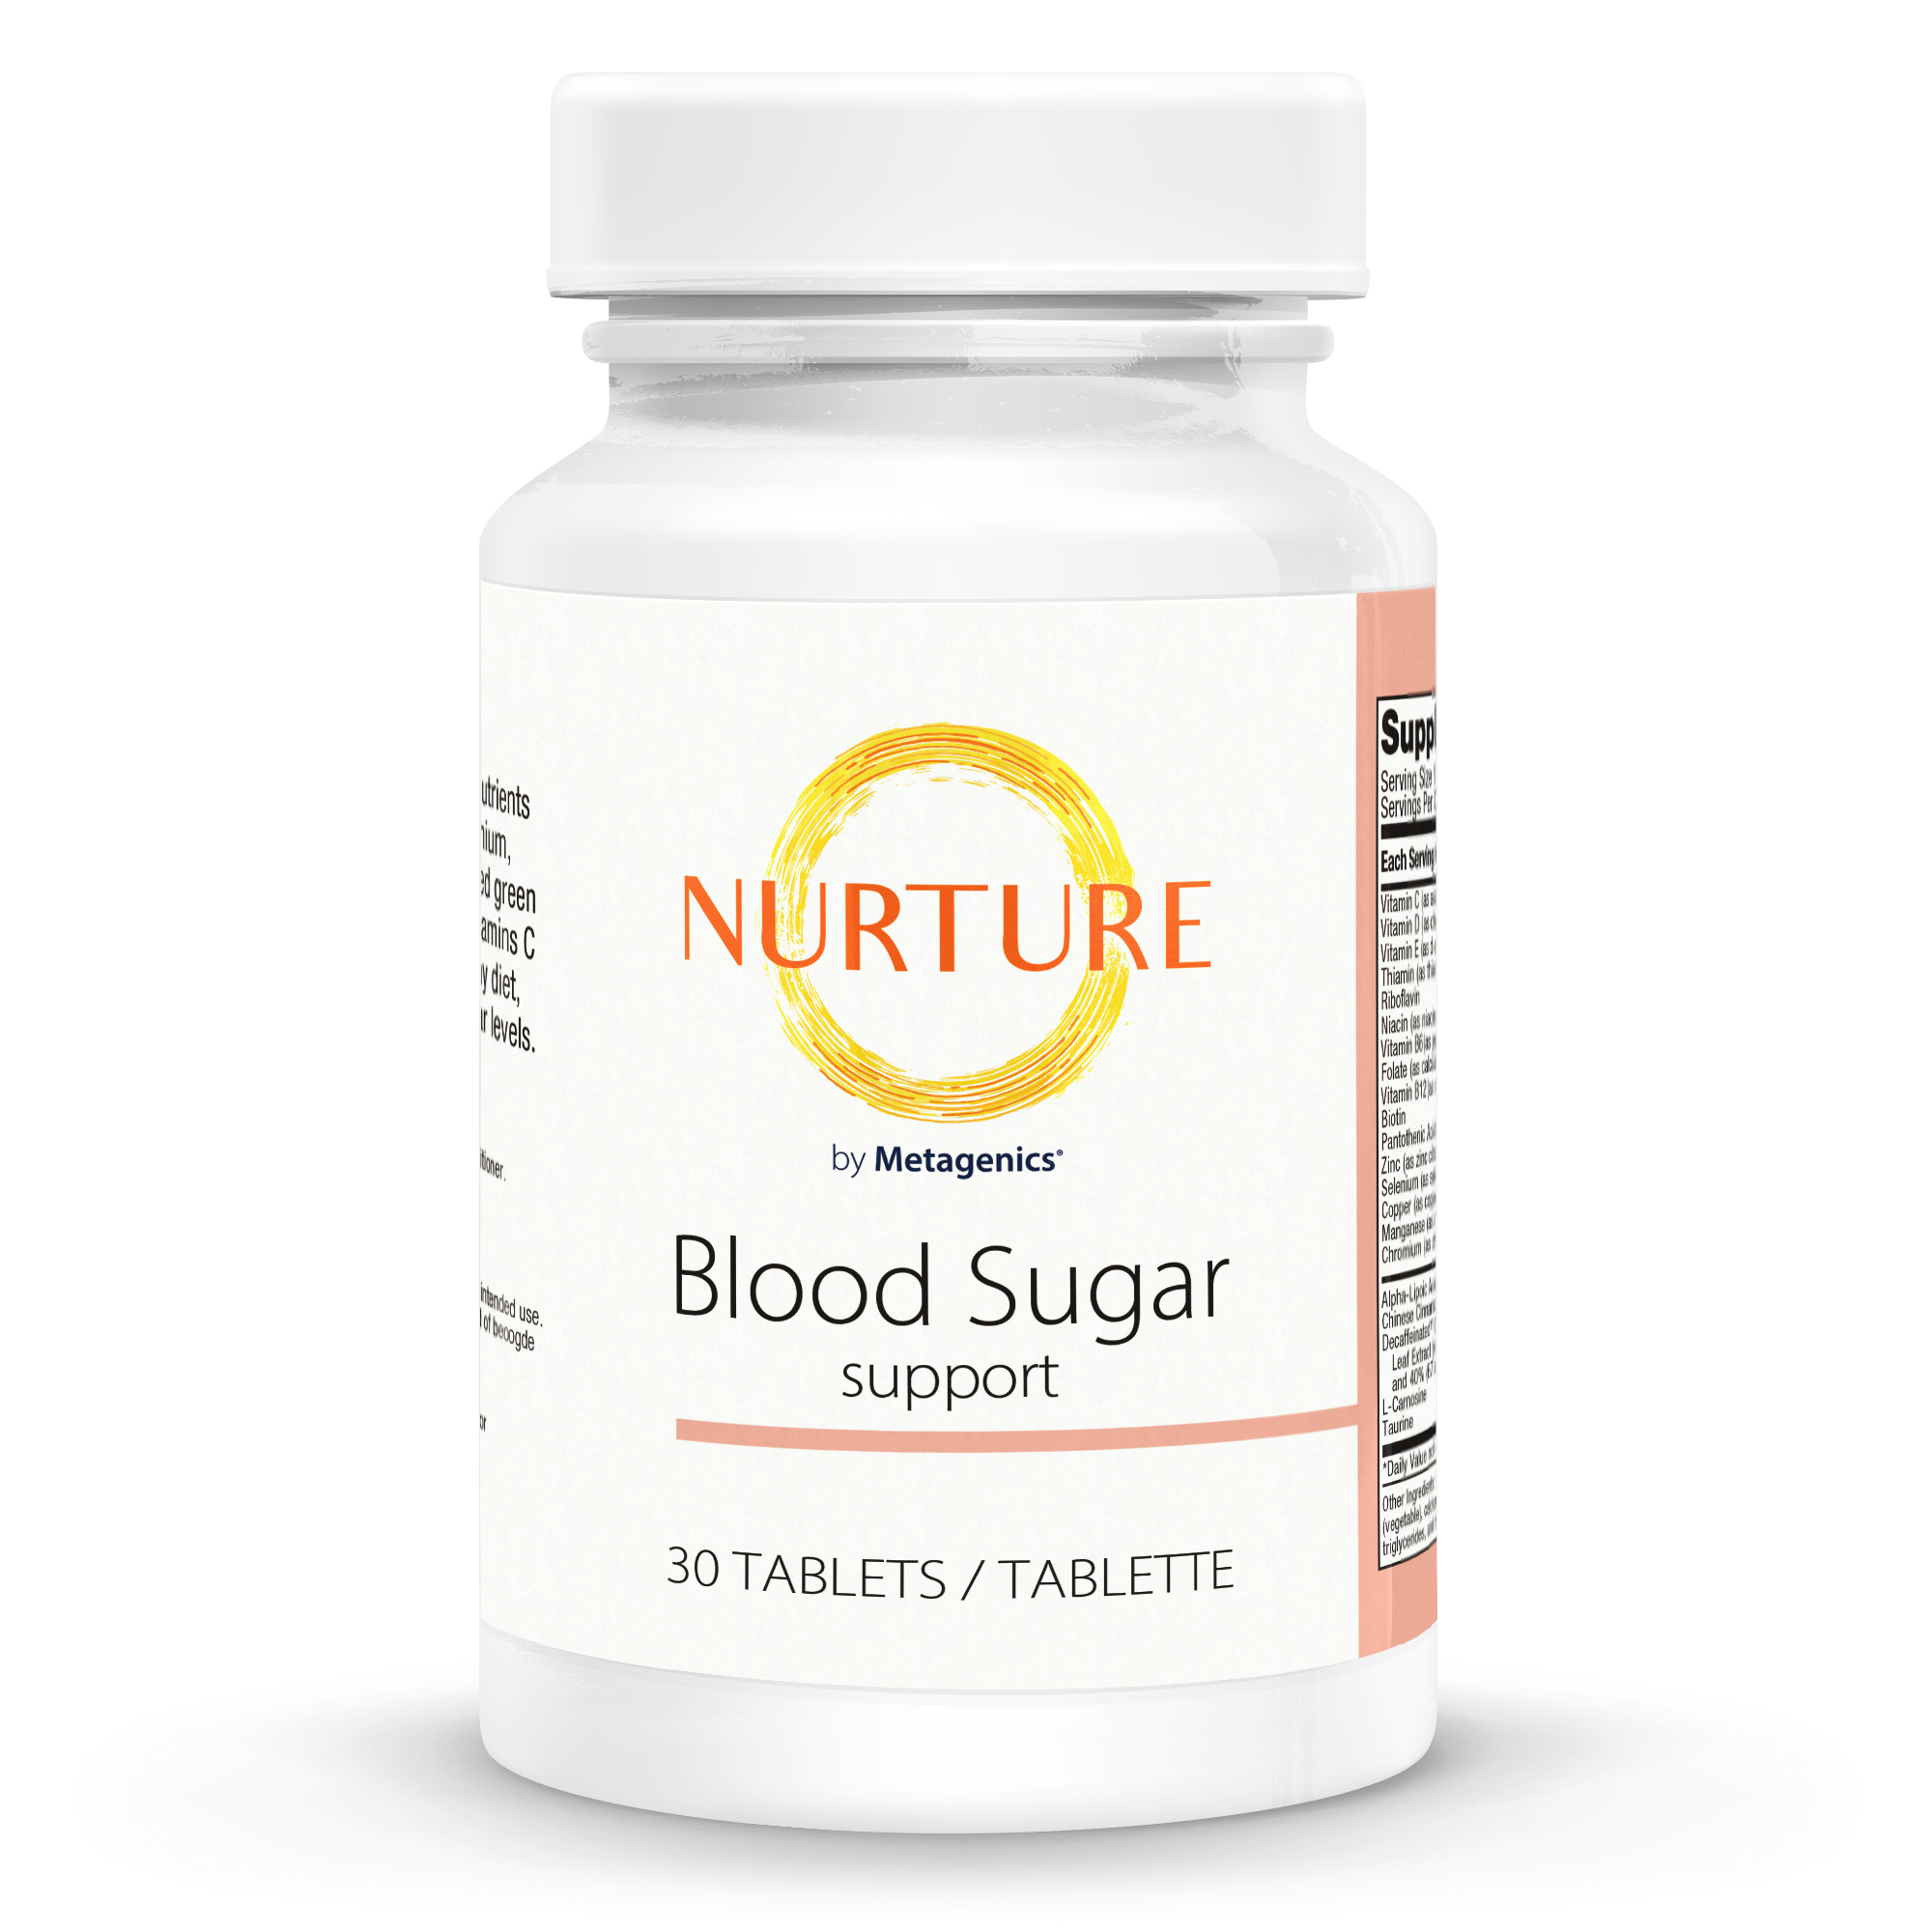 Nurture Blood Sugar Support